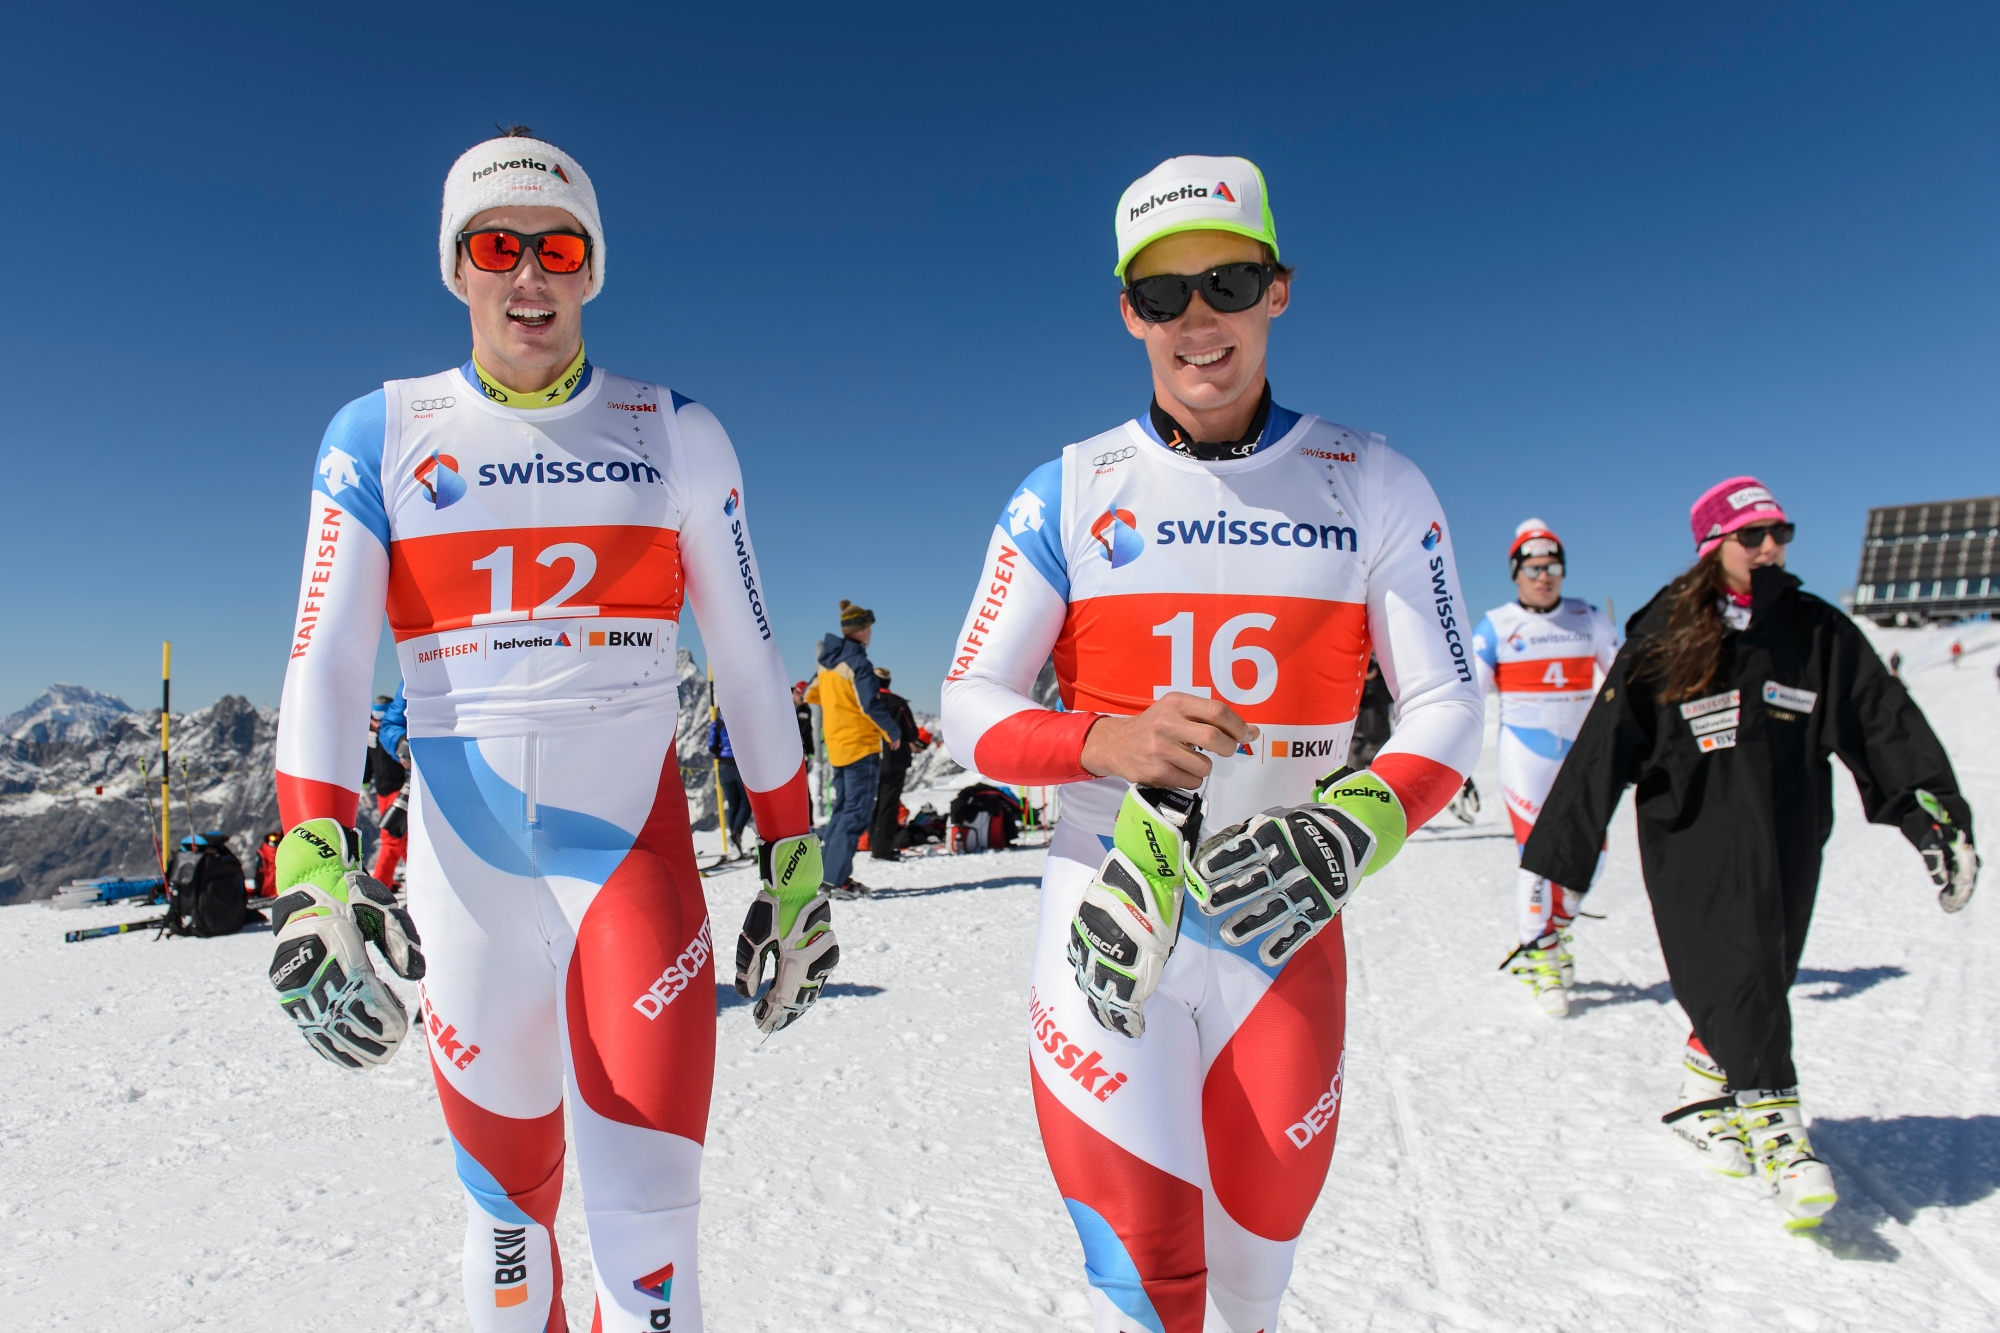 Daniel Yule, gauche, et Luca Aerni, droite, les skieurs suisse, prennent la pose pour les photographes pendant la journee ouverte a la presse par Swiss-Ski lors de la semaine publicitaire, Werbewoche, ce lundi 21 septembre 2015 sur le glacier a Zermatt en Valais. (KEYSTONE/Jean-Christophe Bott)Aerni yule SKI ALPIN WELTCUP 2015/16 SWISS SKI WERBEWOCHE